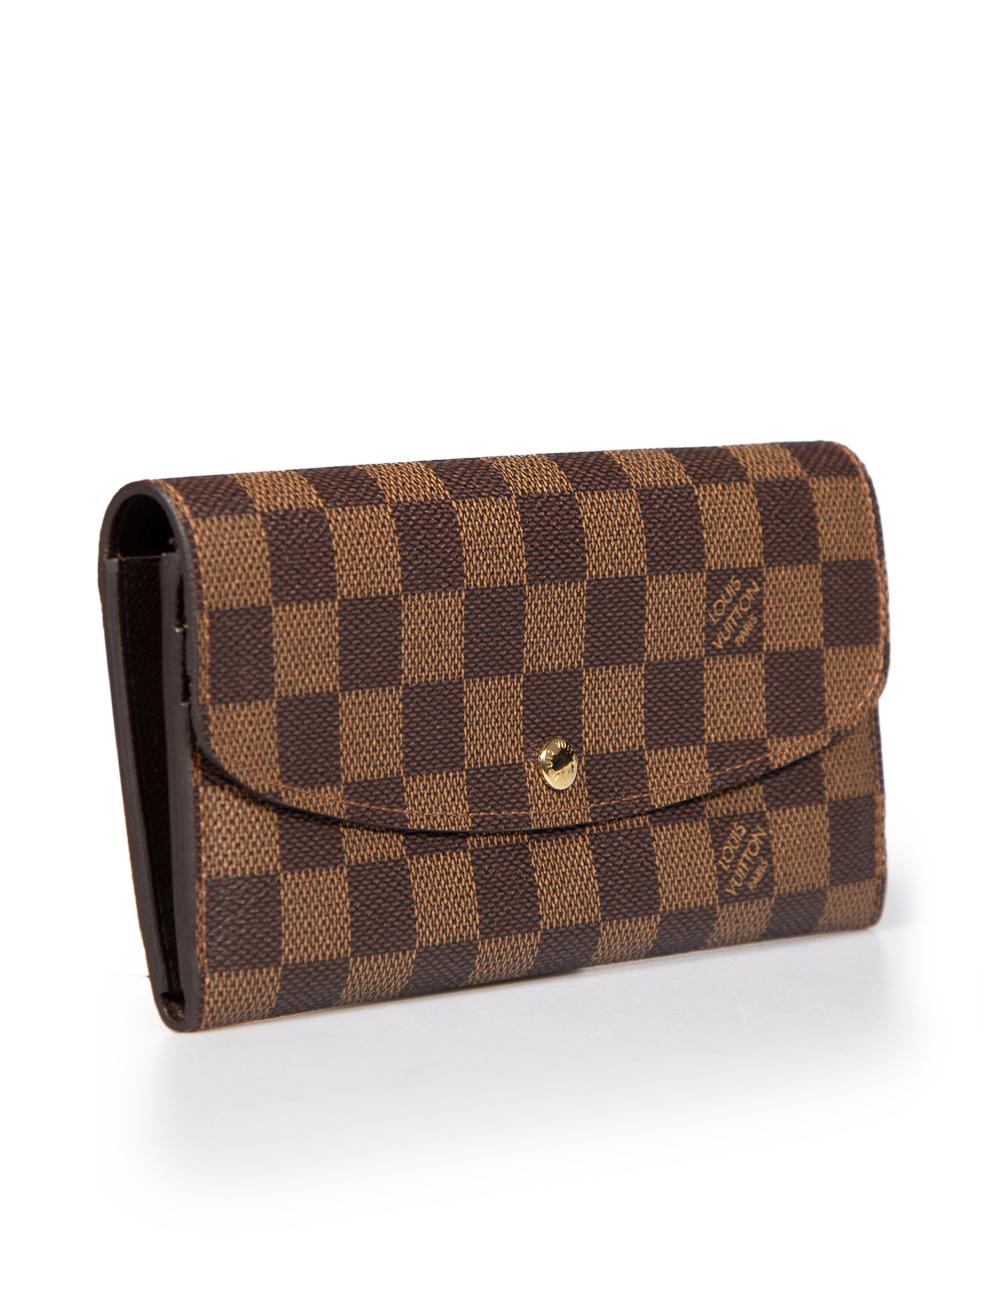 CONDIT ist sehr gut. Kaum sichtbare Abnutzungserscheinungen an der Brieftasche sind bei diesem gebrauchten Louis Vuitton Designer-Wiederverkaufsartikel zu erkennen. Dieser Artikel wird mit einem originalen Staubbeutel und einer Box geliefert.
 
 
 
